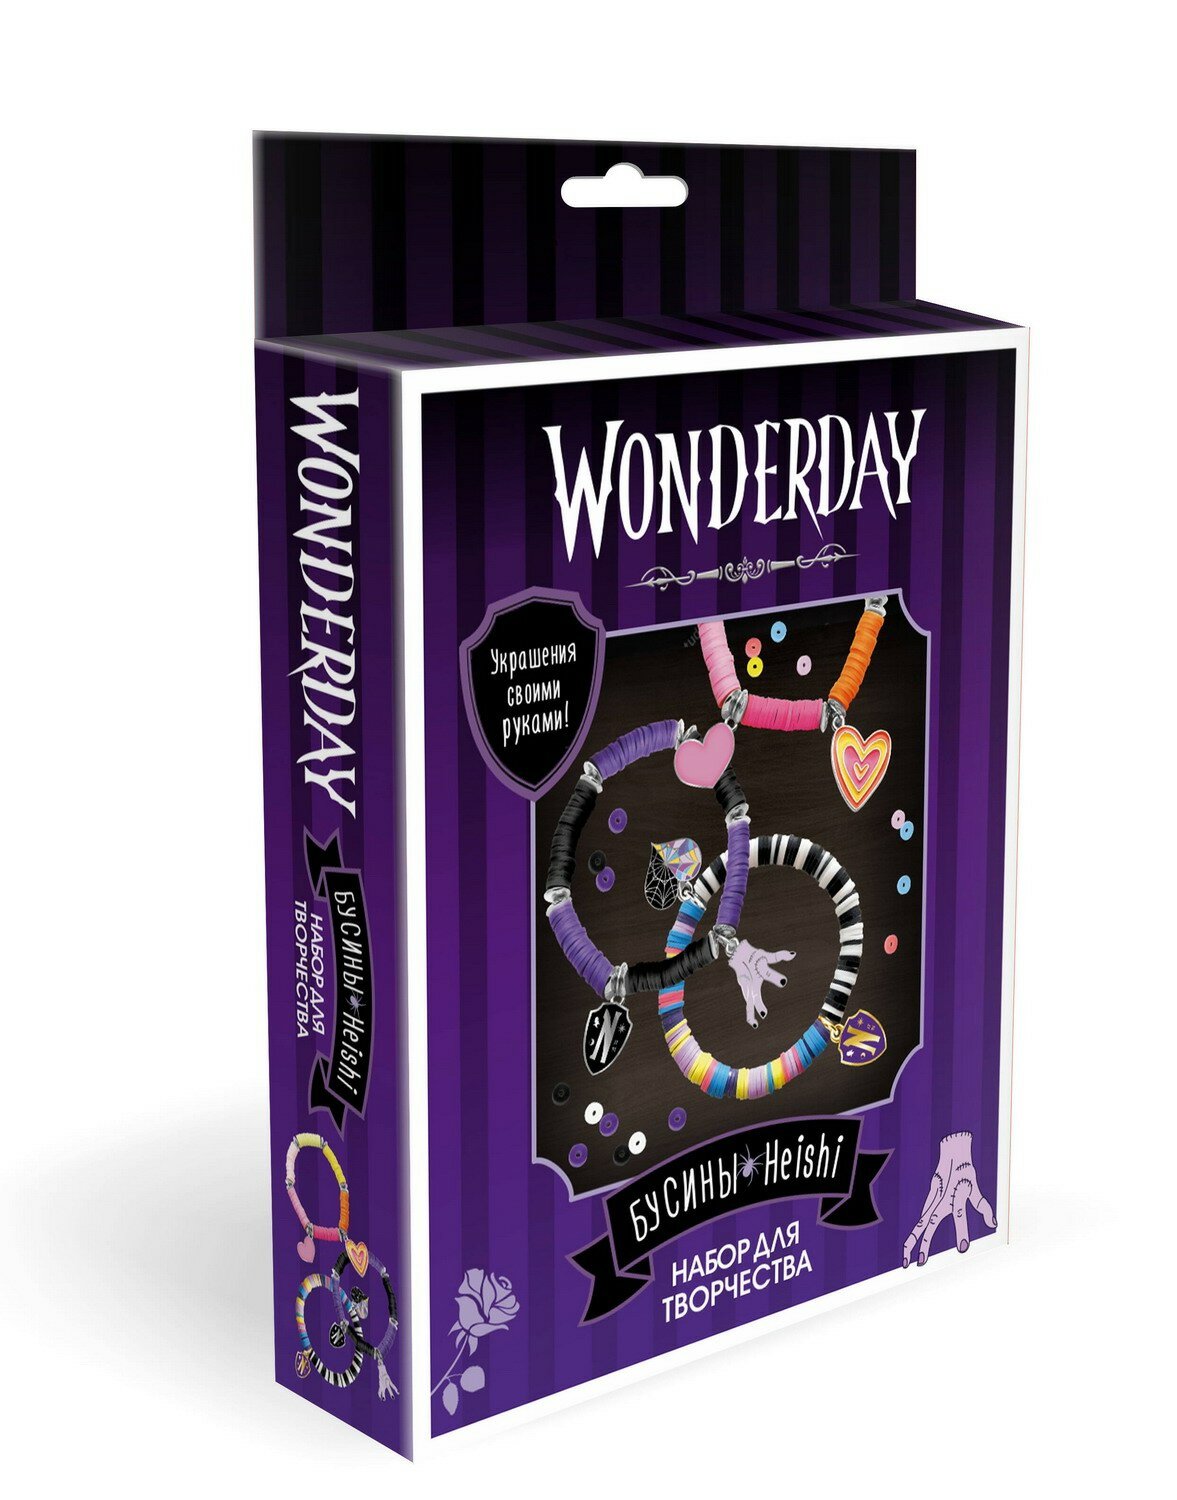 Набор для творчества Wonderday Украшения своими руками Бусины Heishi - Origami [08184]